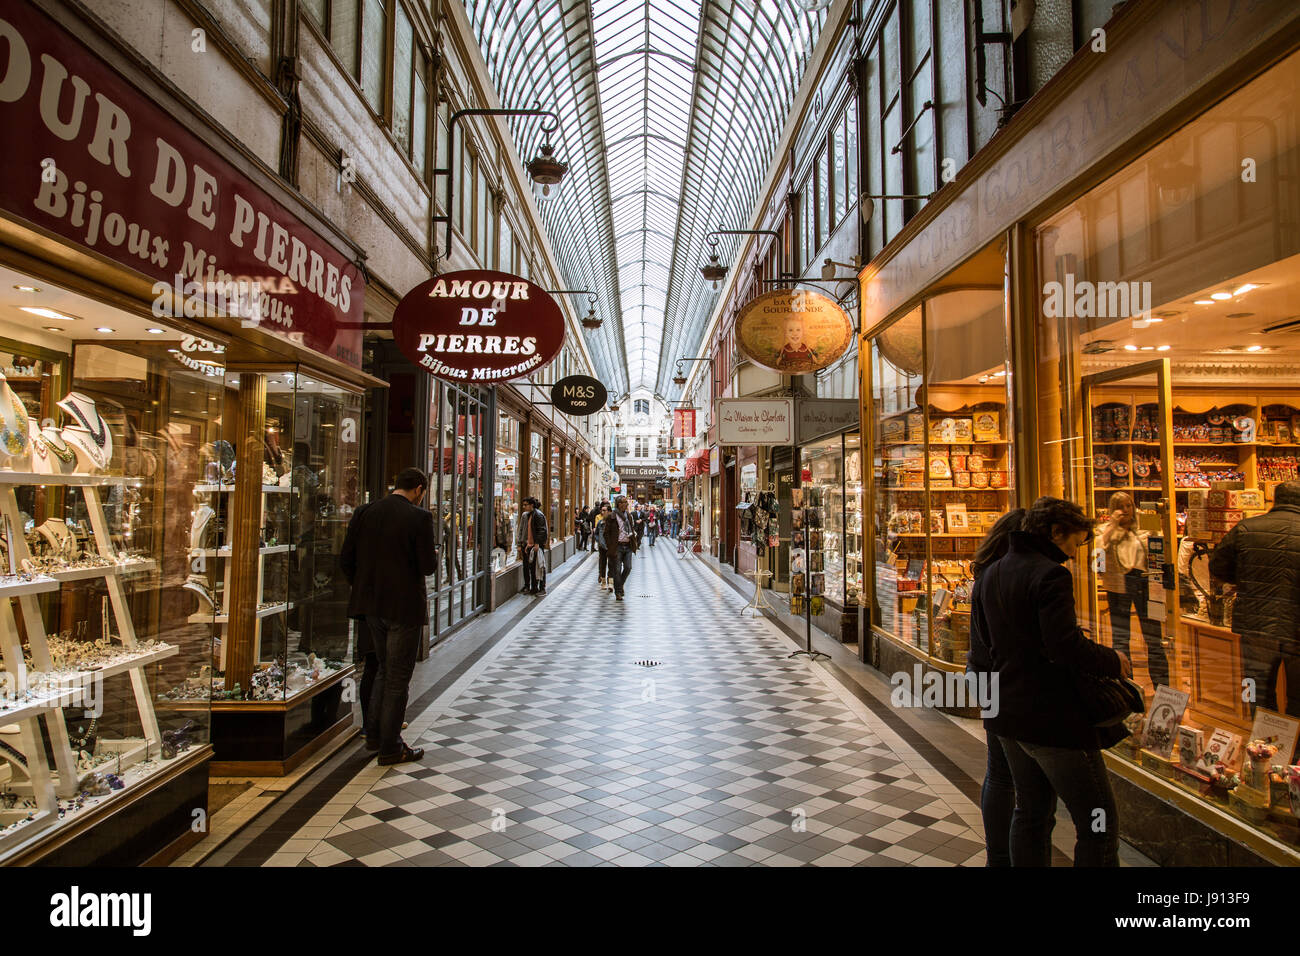 Il passaggio Jouffroy a Parigi, con un pavimento di mattonelle, skylight, e l'amour de Pierres shop sulla sinistra. Foto Stock